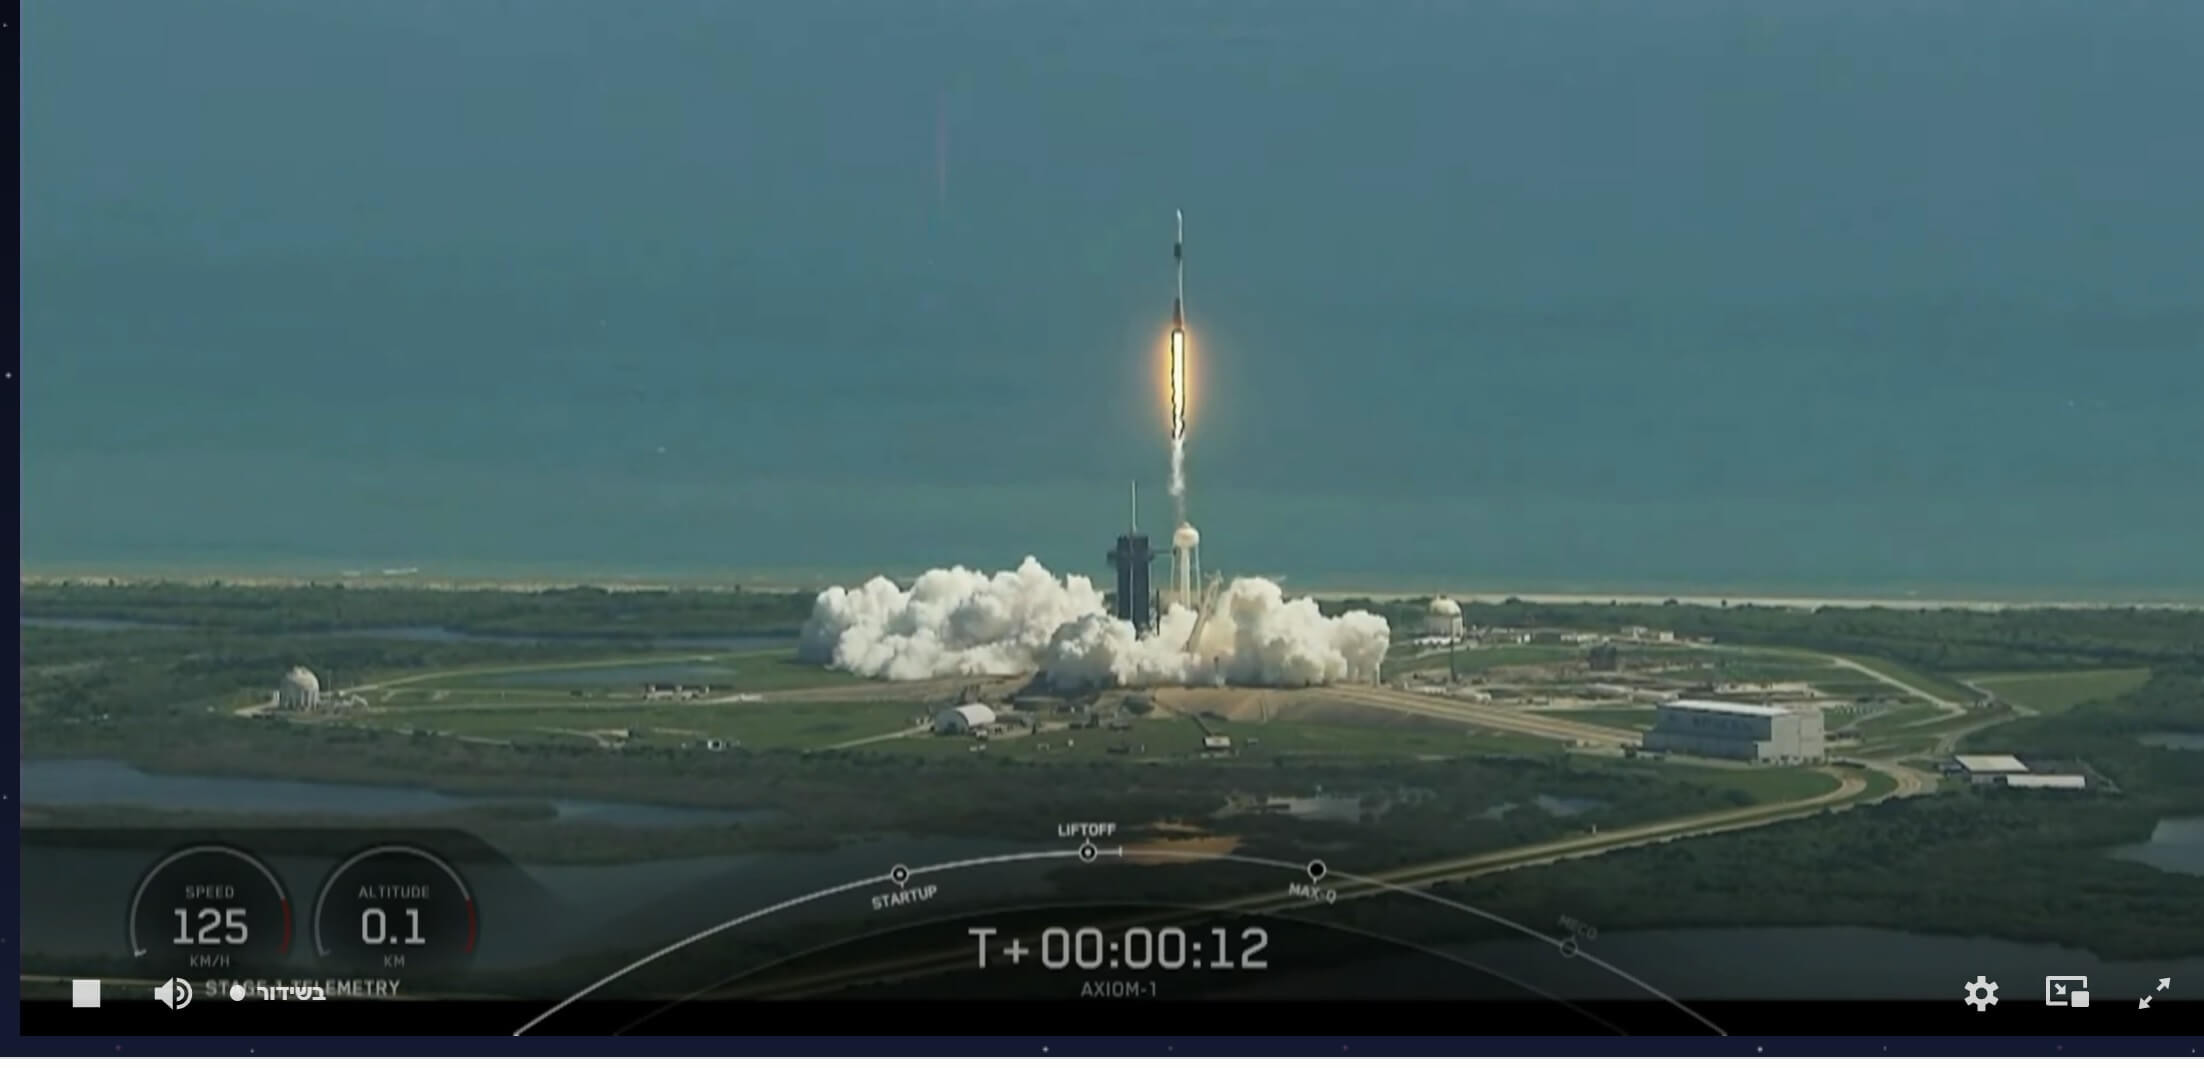 إطلاق طاقم المركبة الفضائية Endeavour Dragon على منصة الإطلاق Falcon 9 للمهمة الخاصة AX-1 والتي شارك فيها أيضاً الإسرائيلي إيتان ستيفا. لقطة شاشة من بث اكسيوم. وتخضع شركات الفضاء لقوانين الدول التي تعمل فيها.